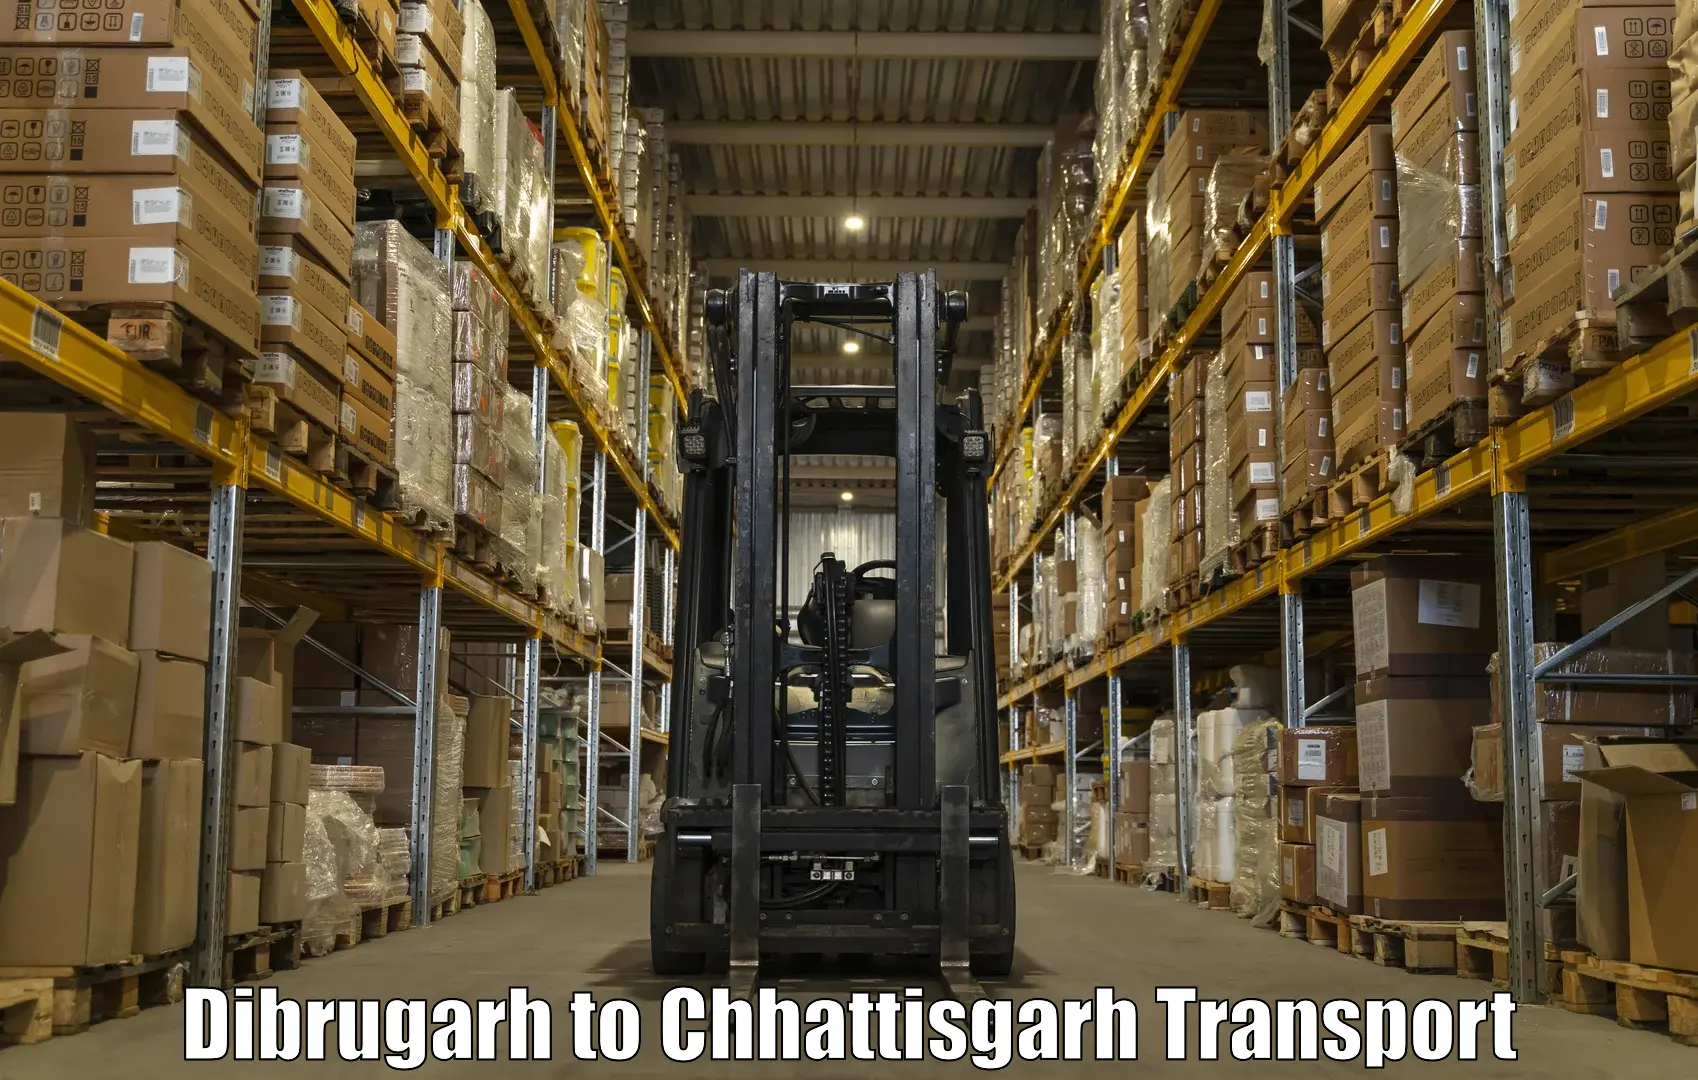 Transport in sharing in Dibrugarh to Bastar